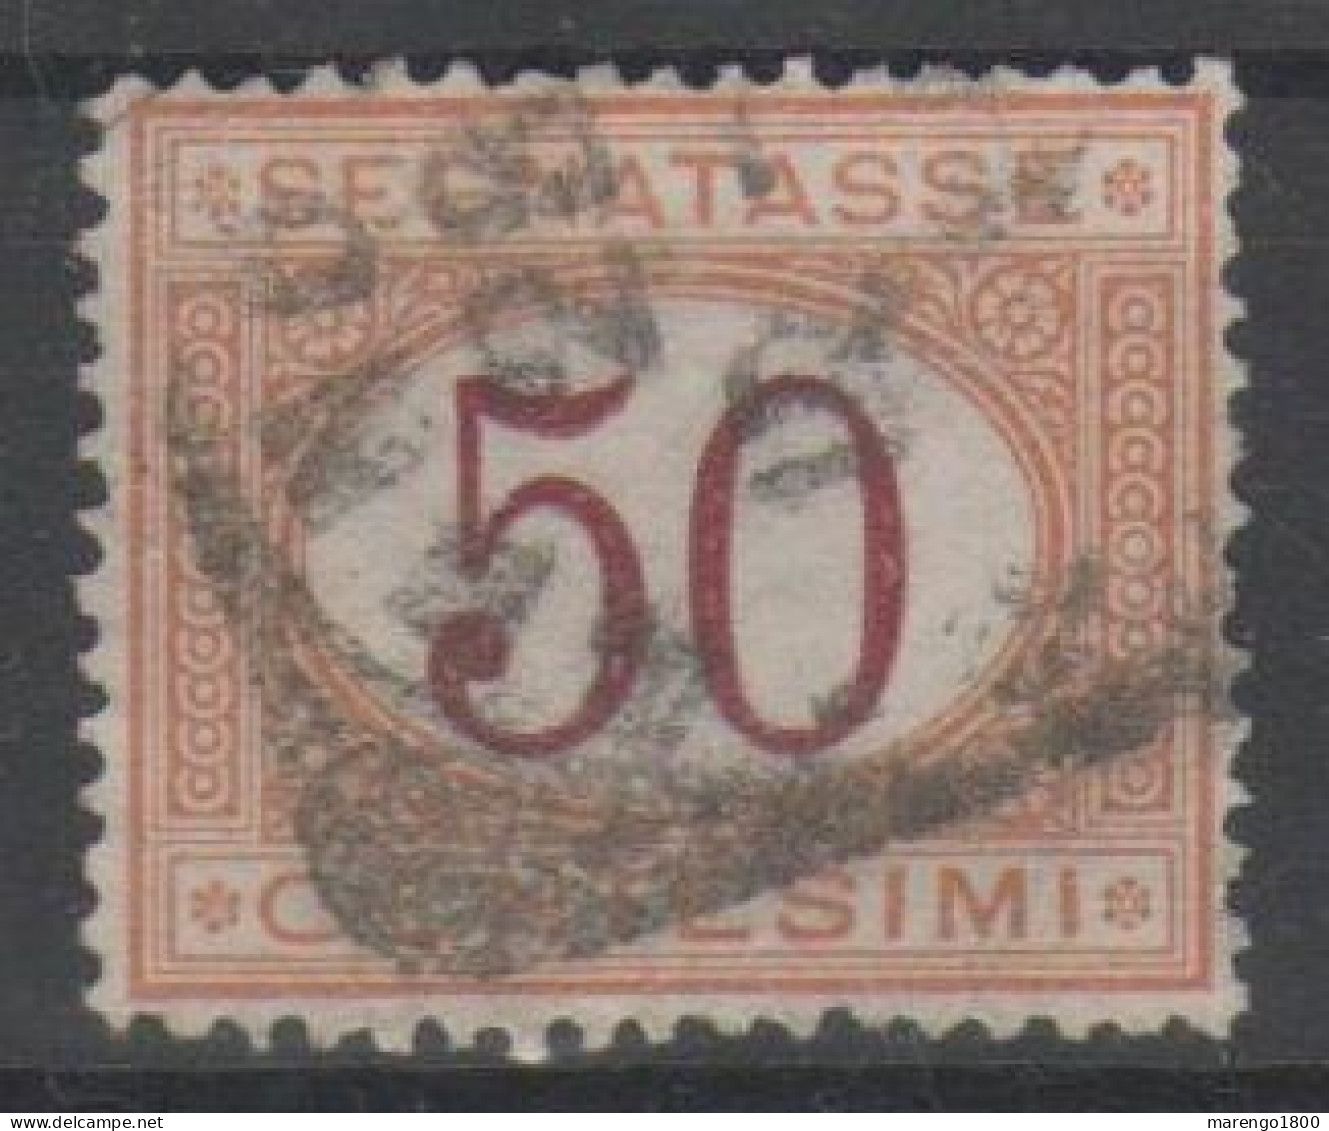 ITALIA 1870 - Segnatasse 50 C. - Taxe